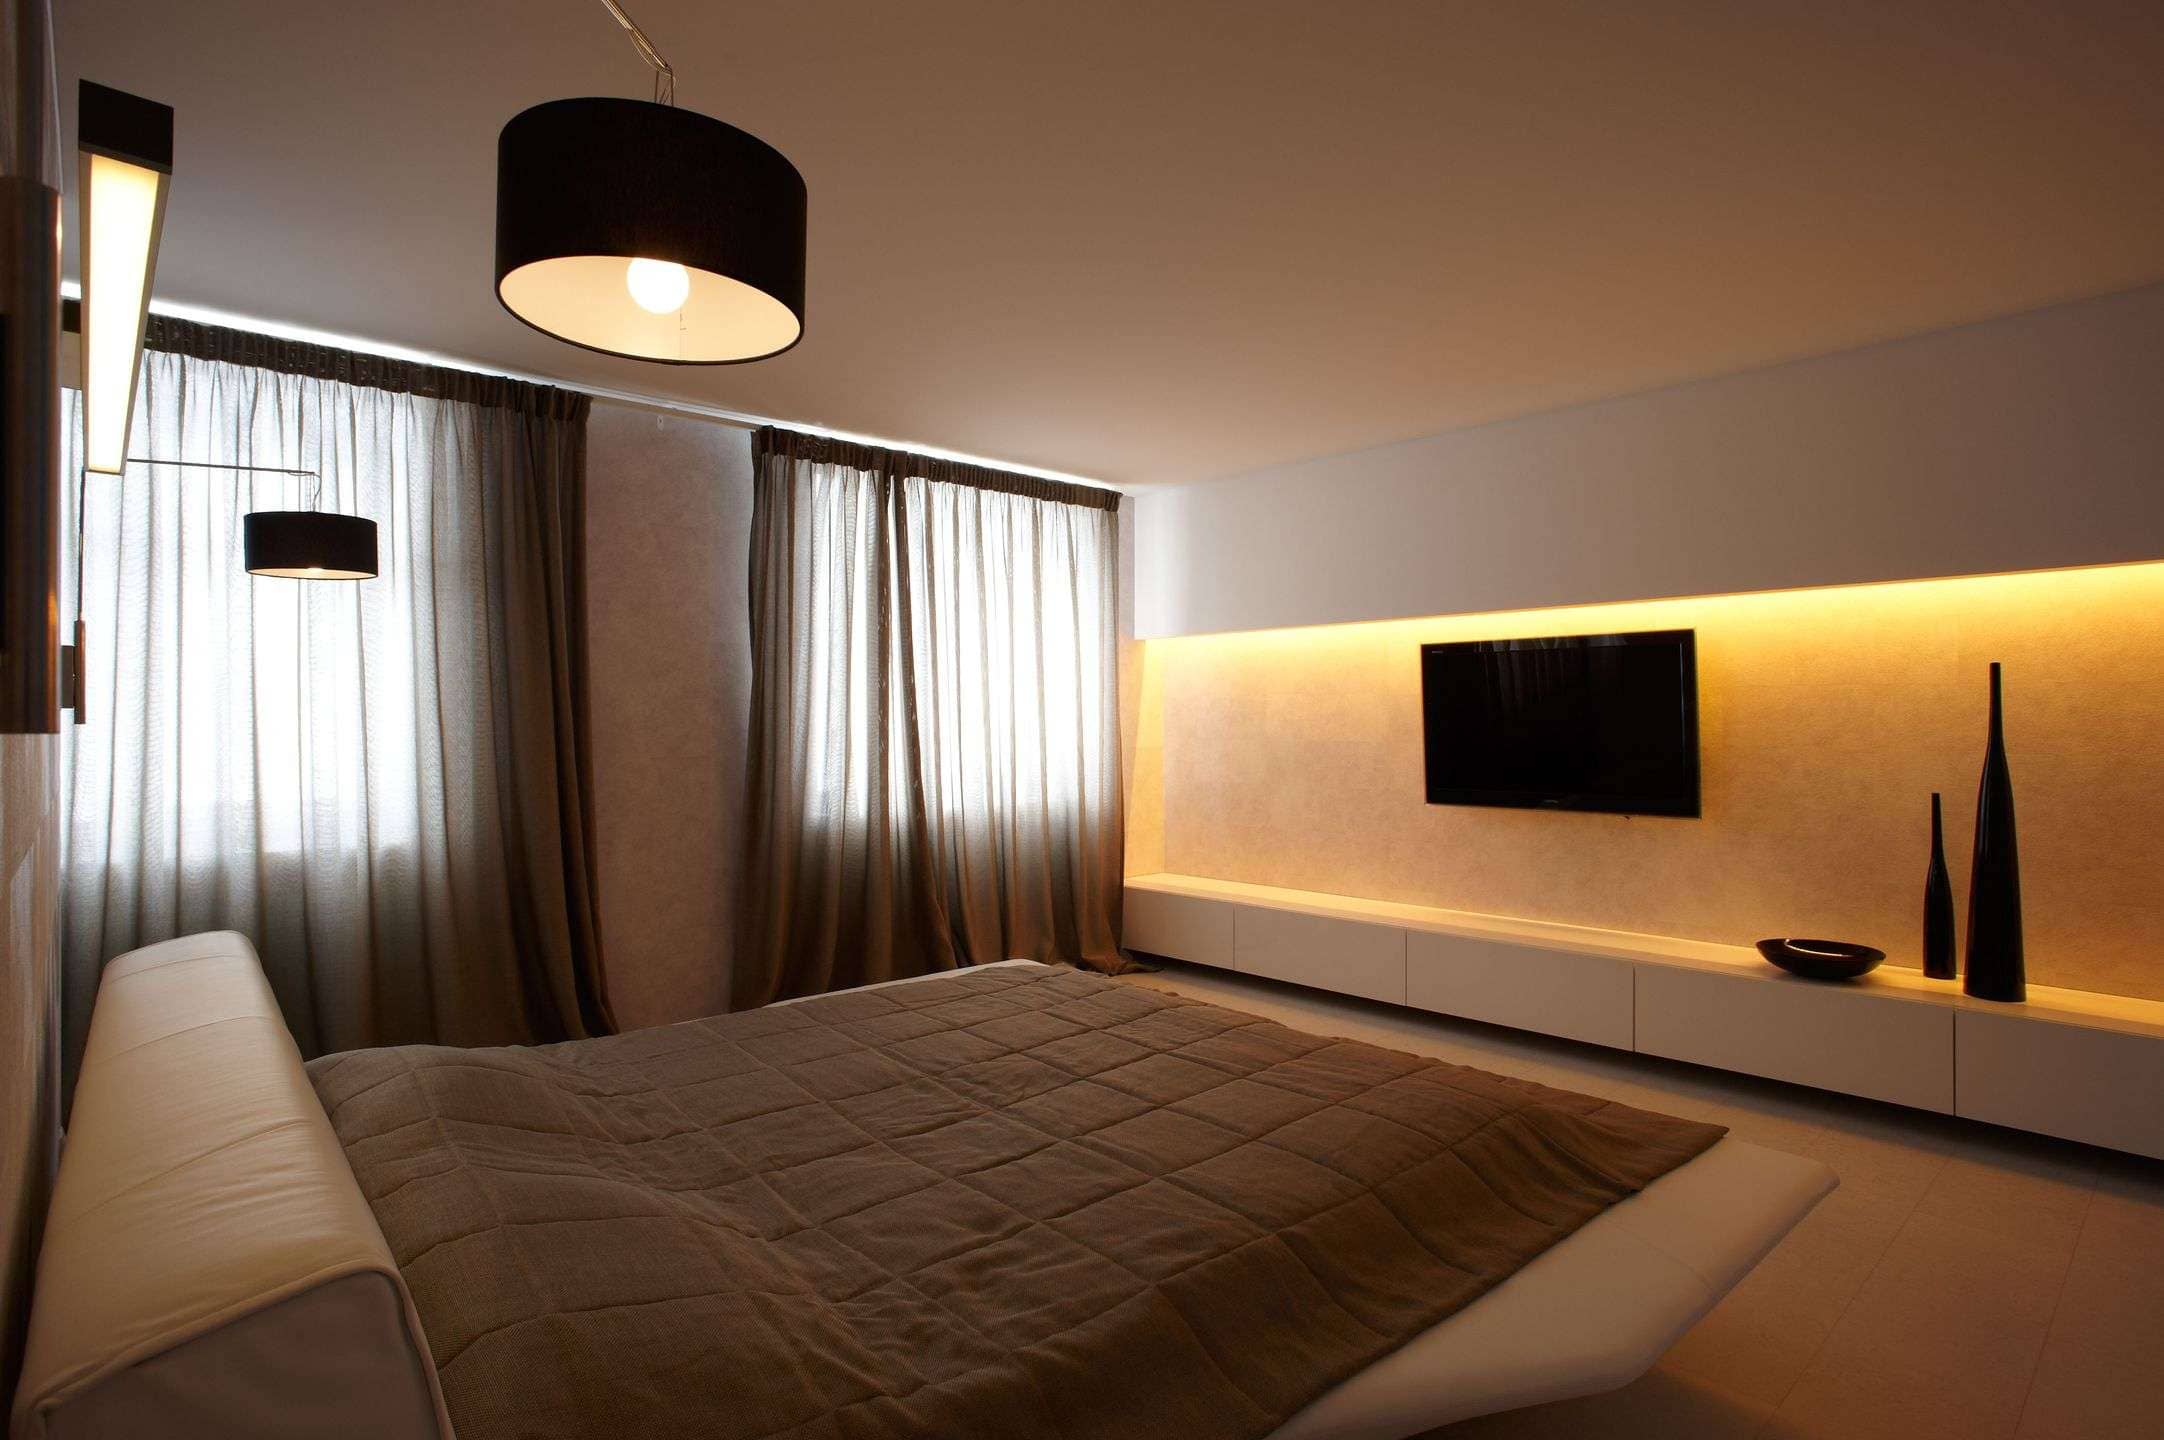 minimalism style bedroom